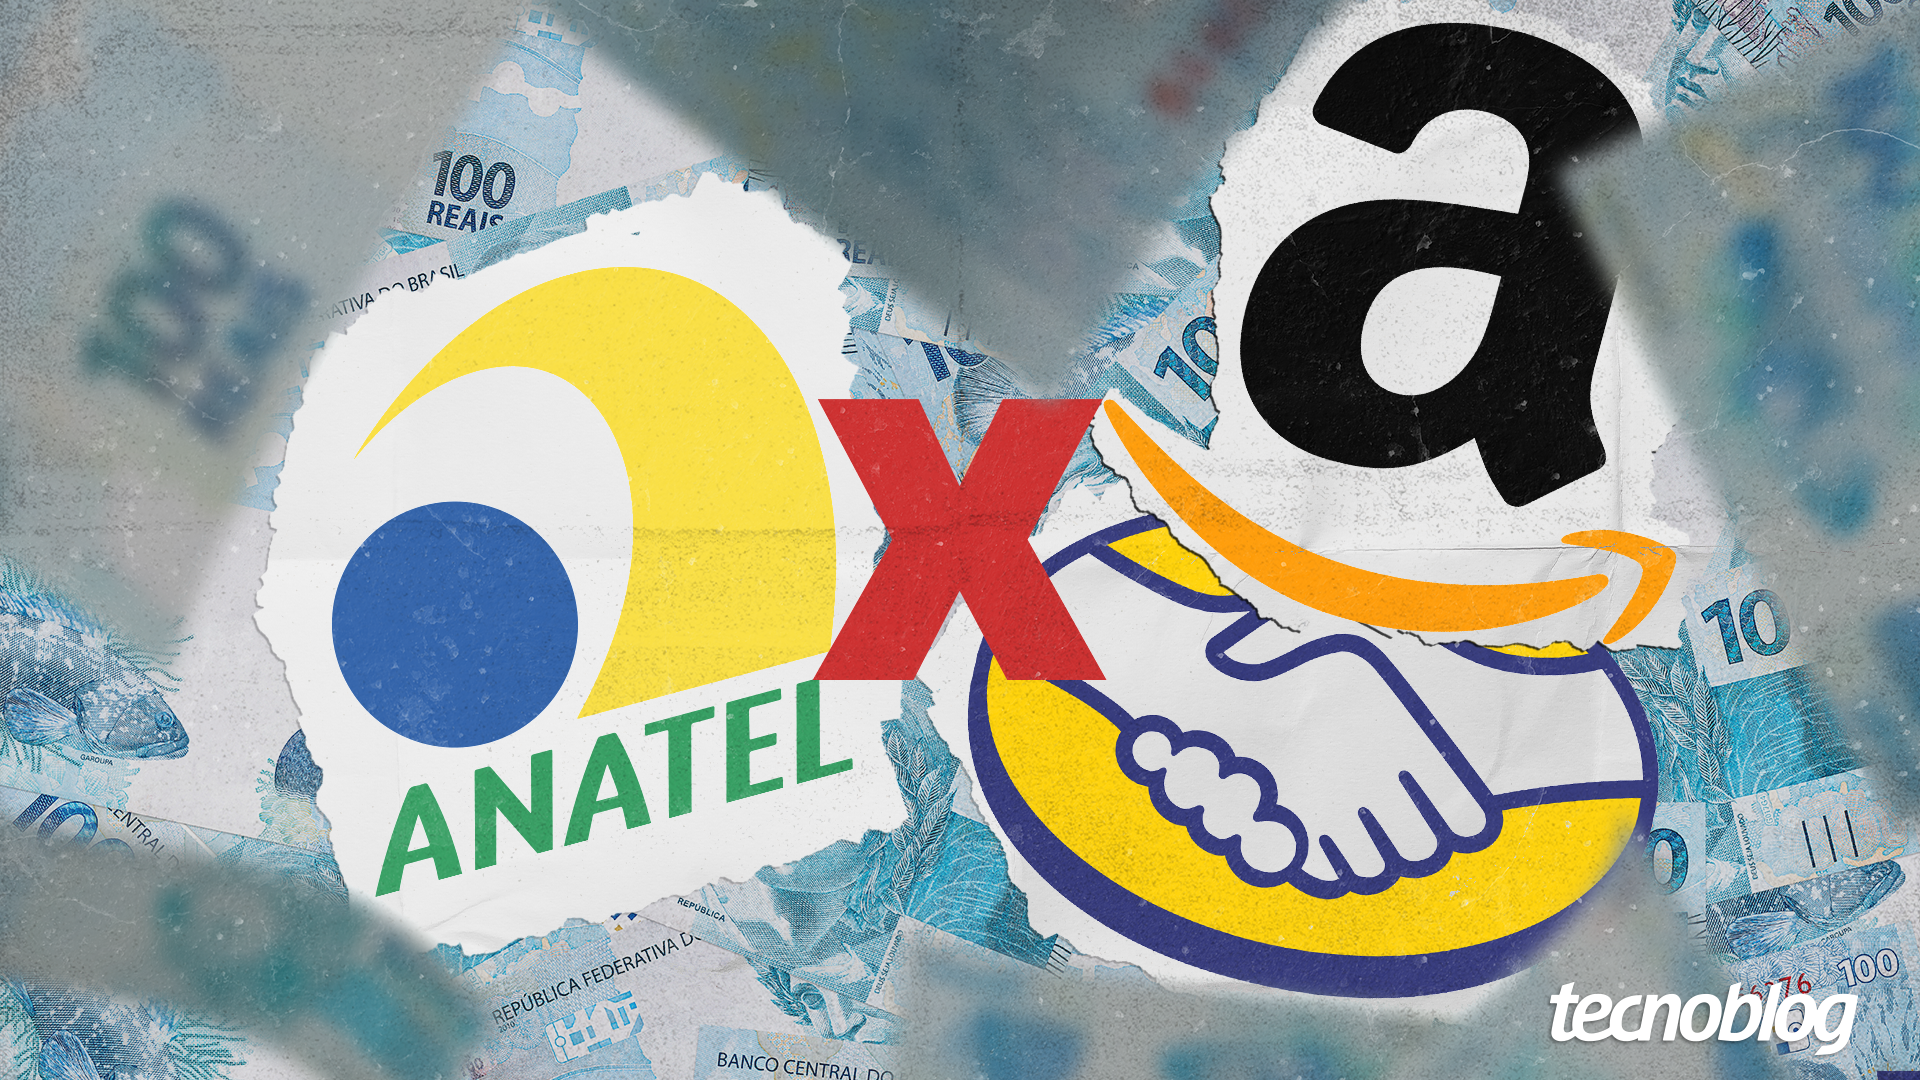 Ilustração com as marcas da Anatel, Amazon e Mercado Livre cercadas de notas de real